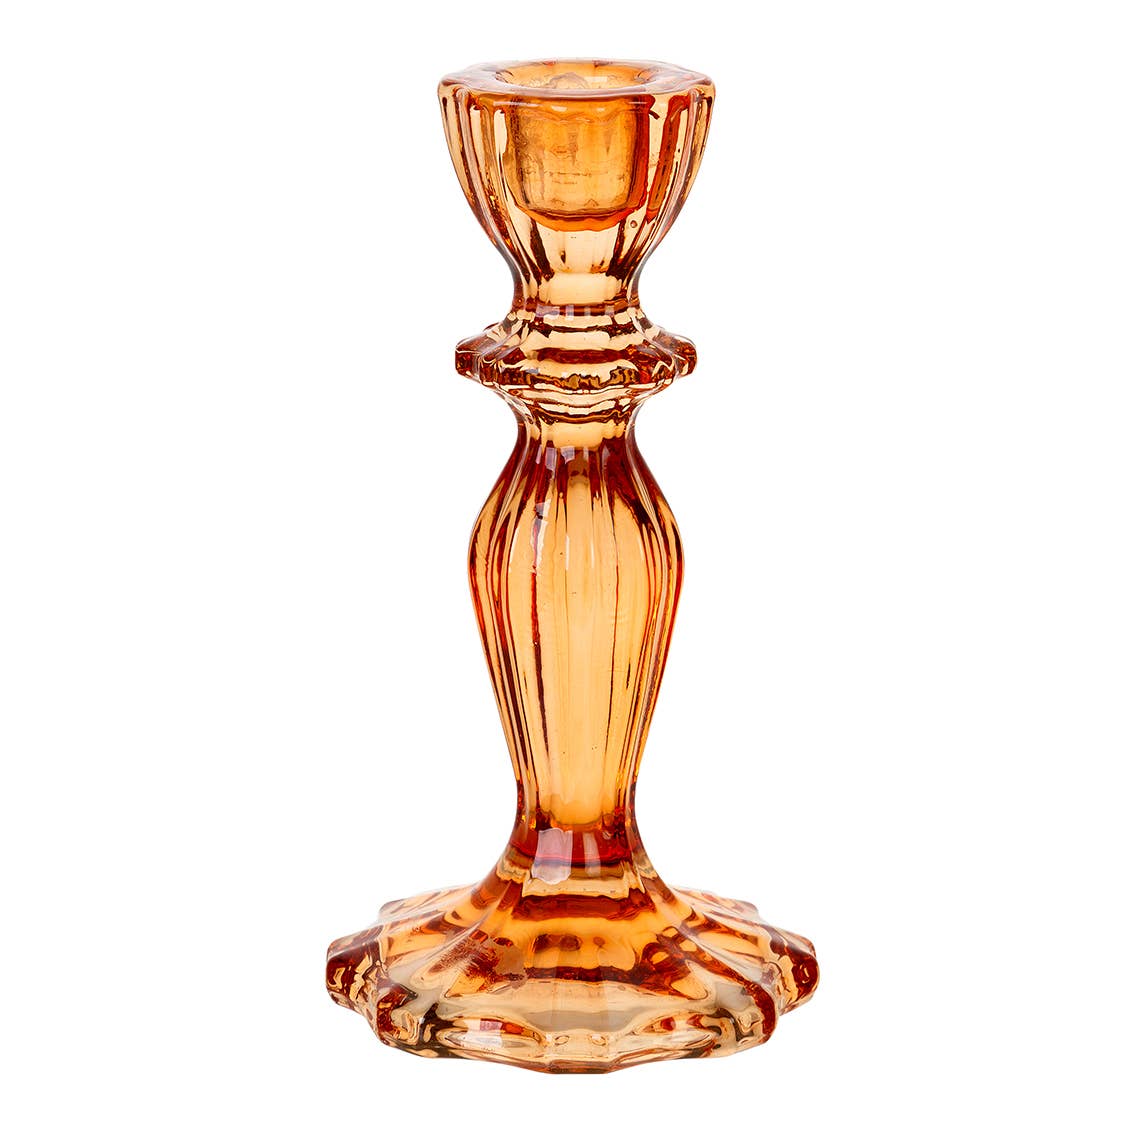 Vintage Glass Candlestick Holder - Orange